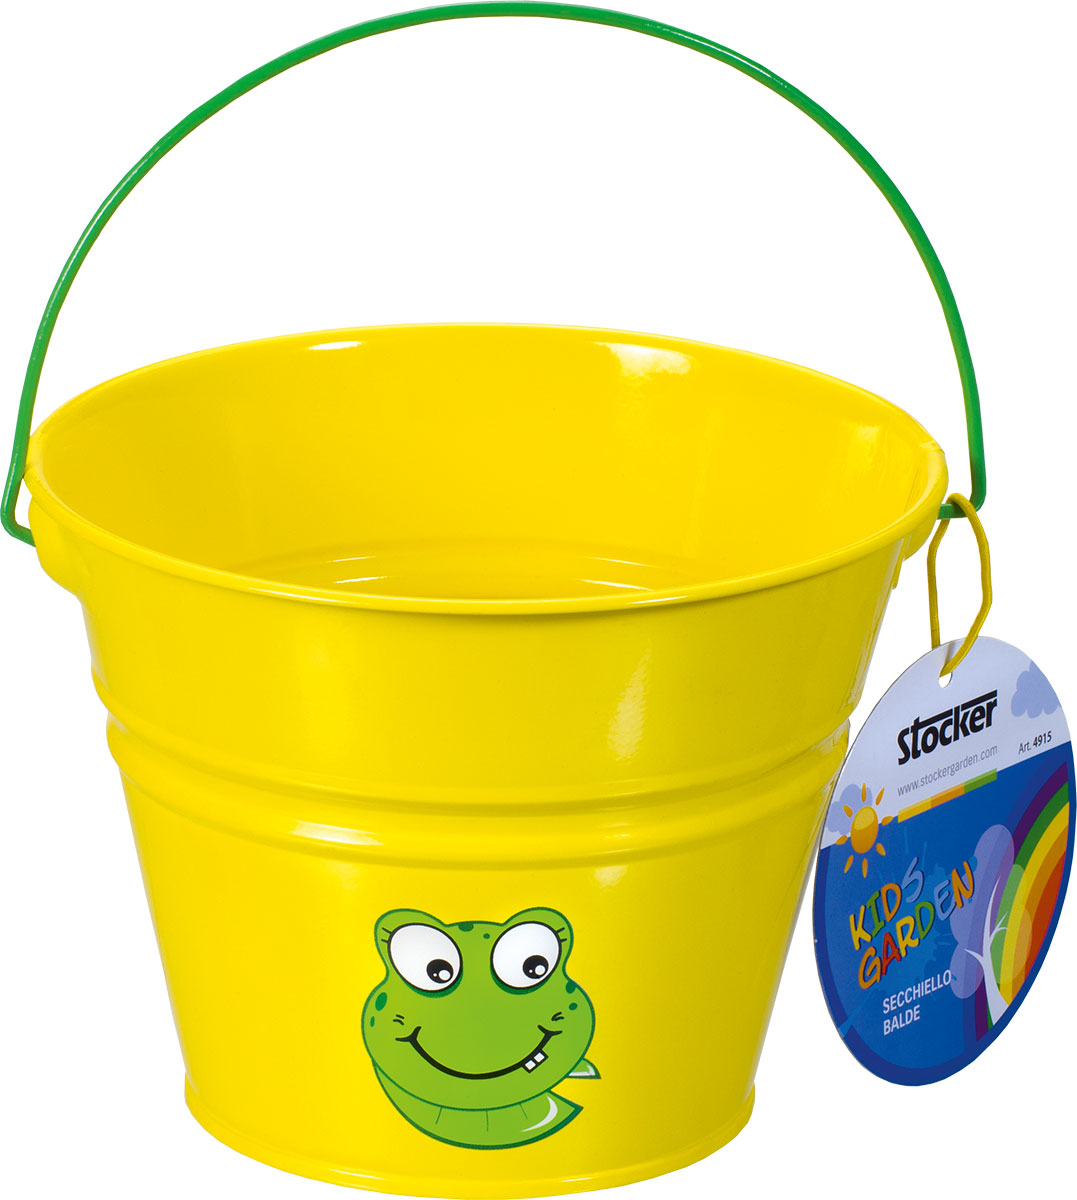 Children's bucket metal yellow